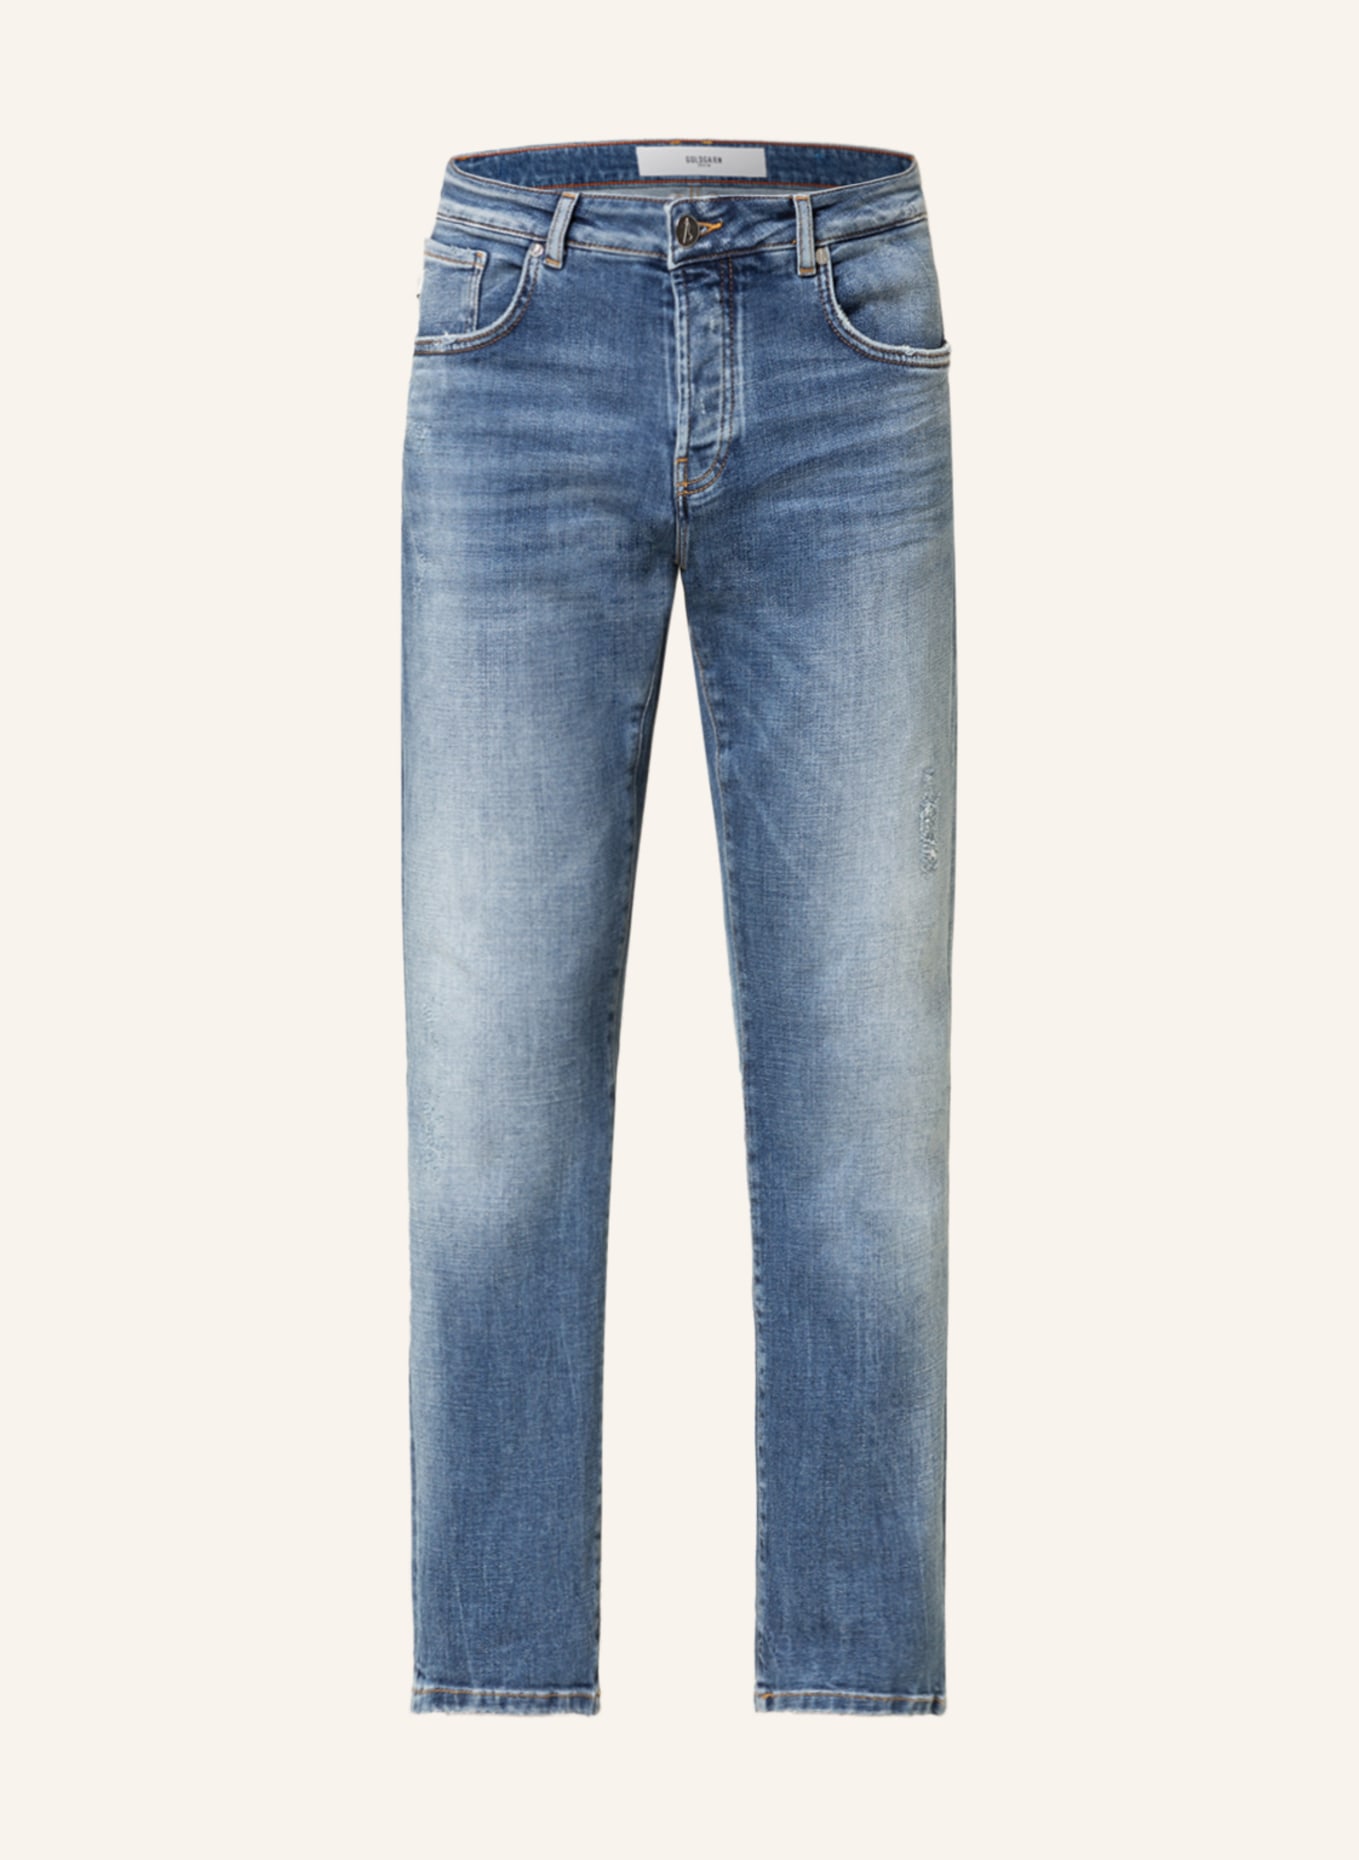 GOLDGARN DENIM Jeans U2 Slim Fit , Farbe: 1010 Vintage Blue (Bild 1)